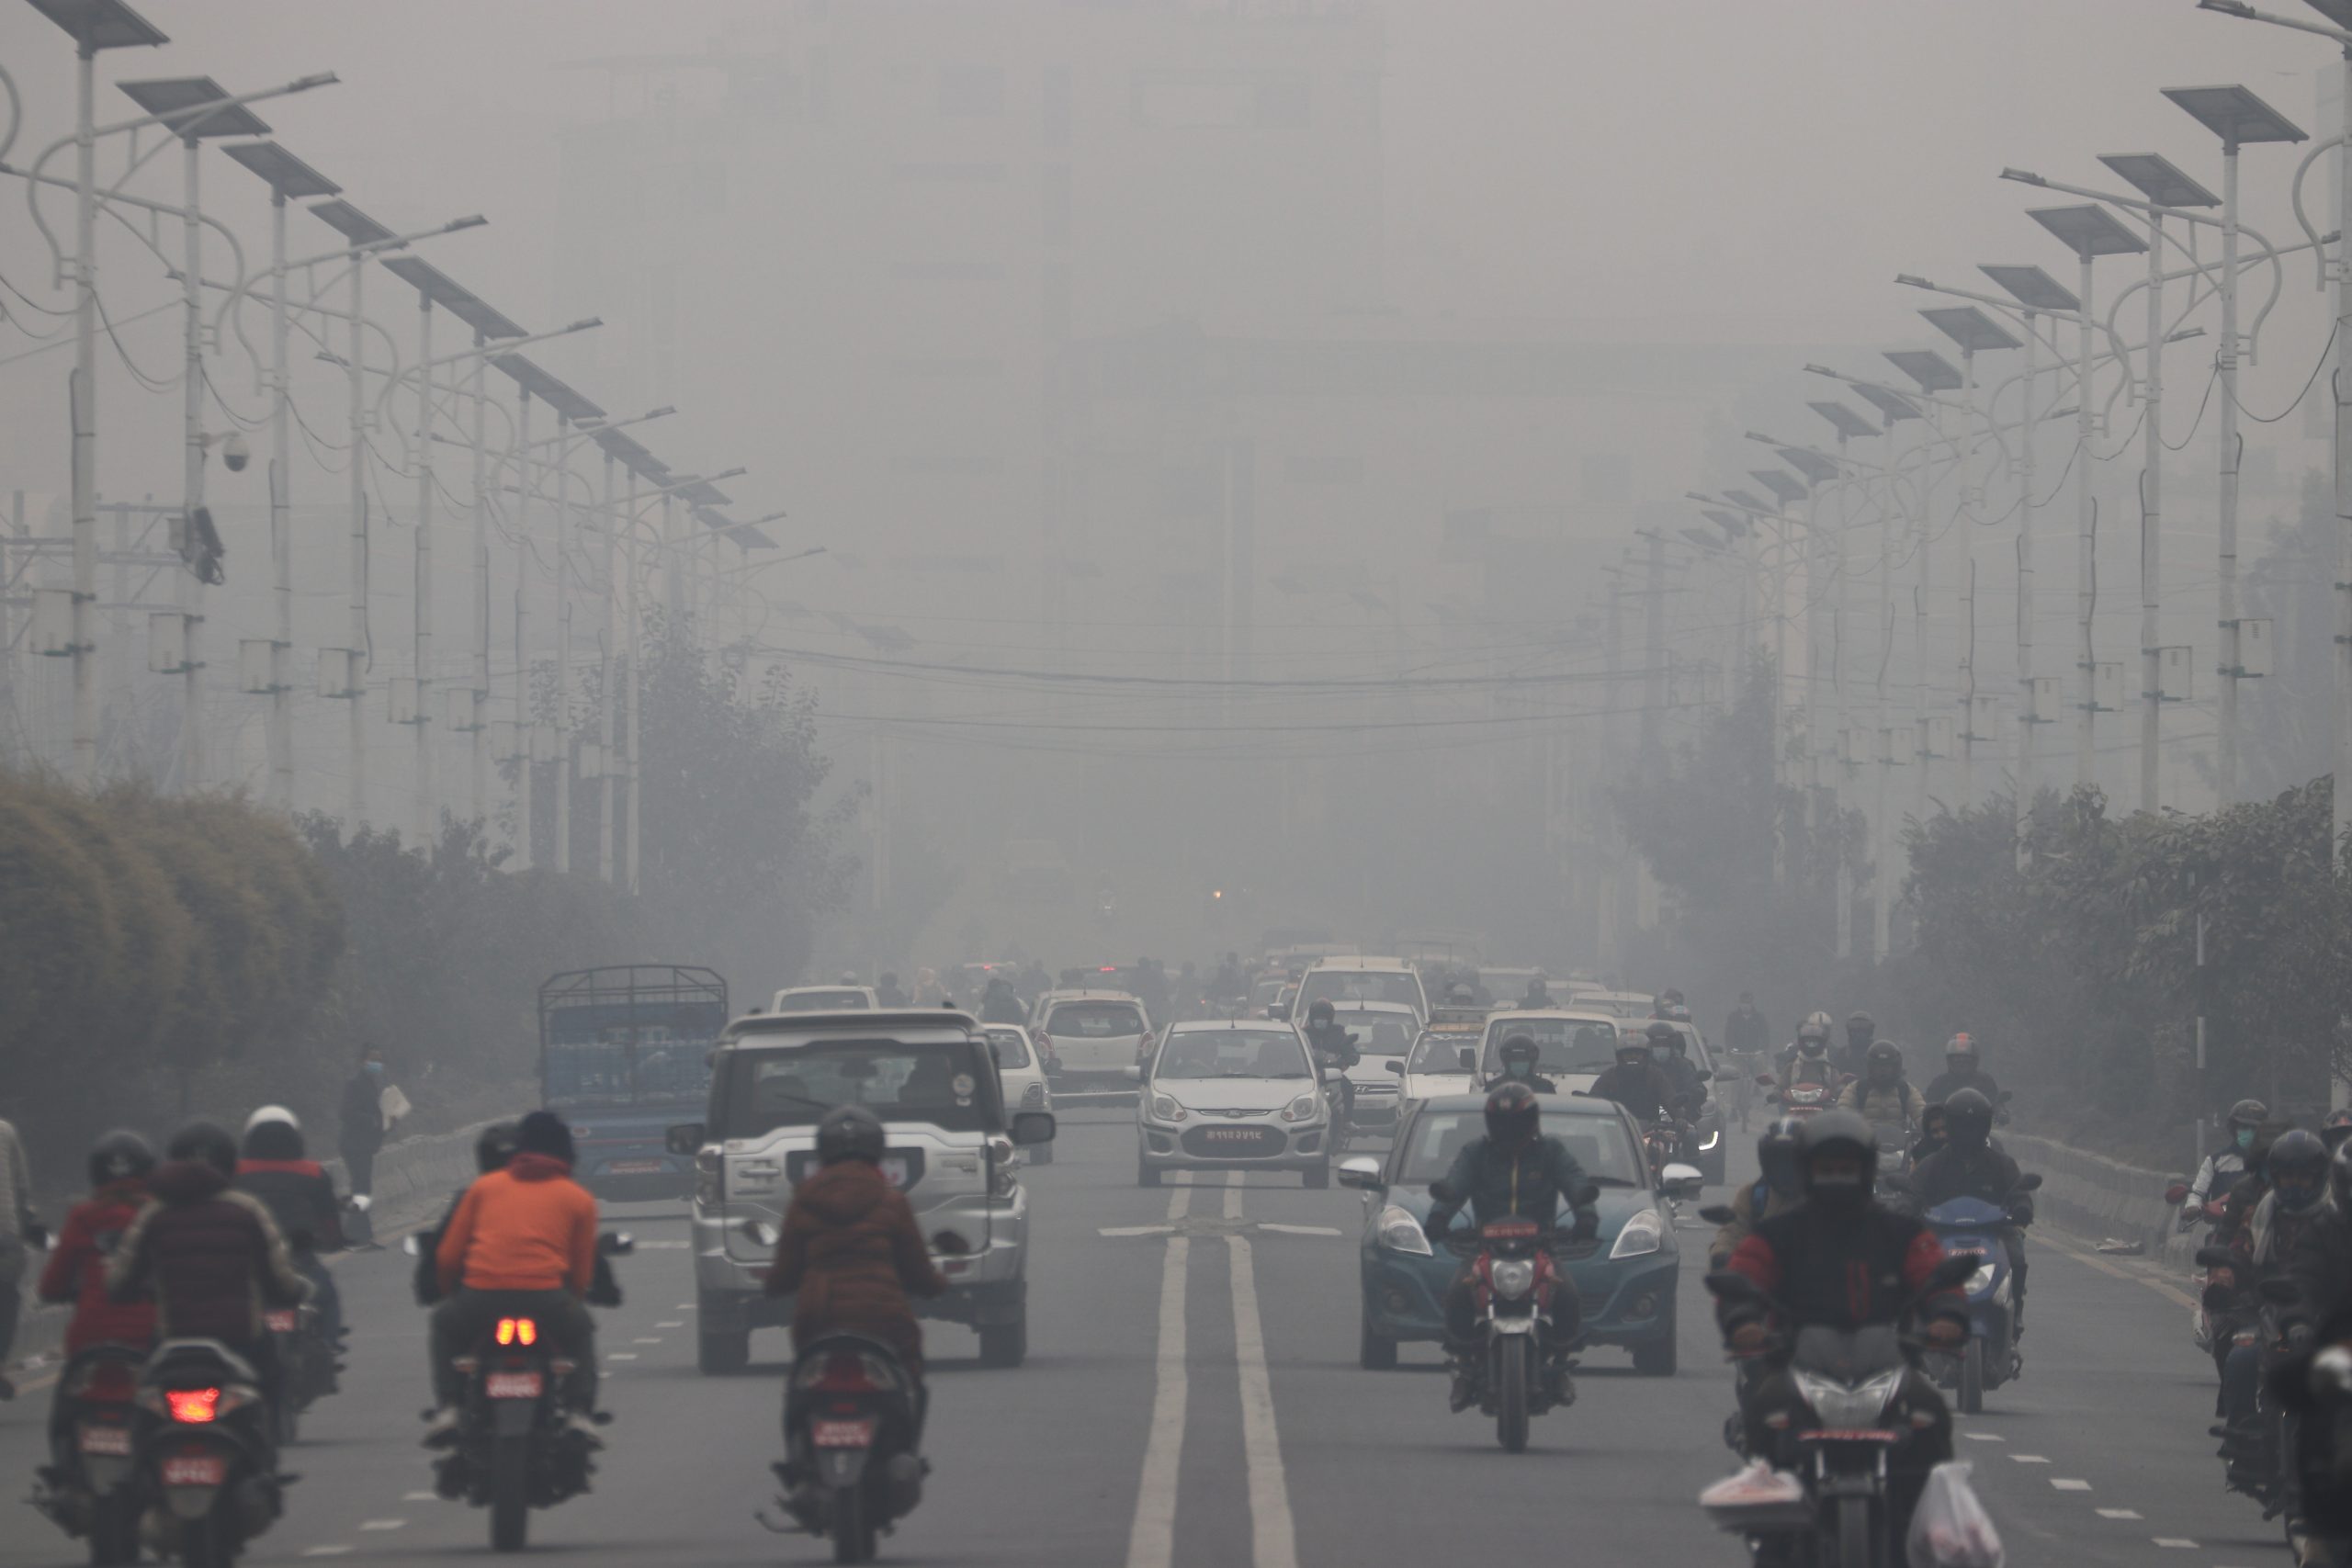 काठमाडौं सहर विश्वका बढी वायु प्रदूषित सहरमध्ये १०औं स्थानमा : Icon Khabar